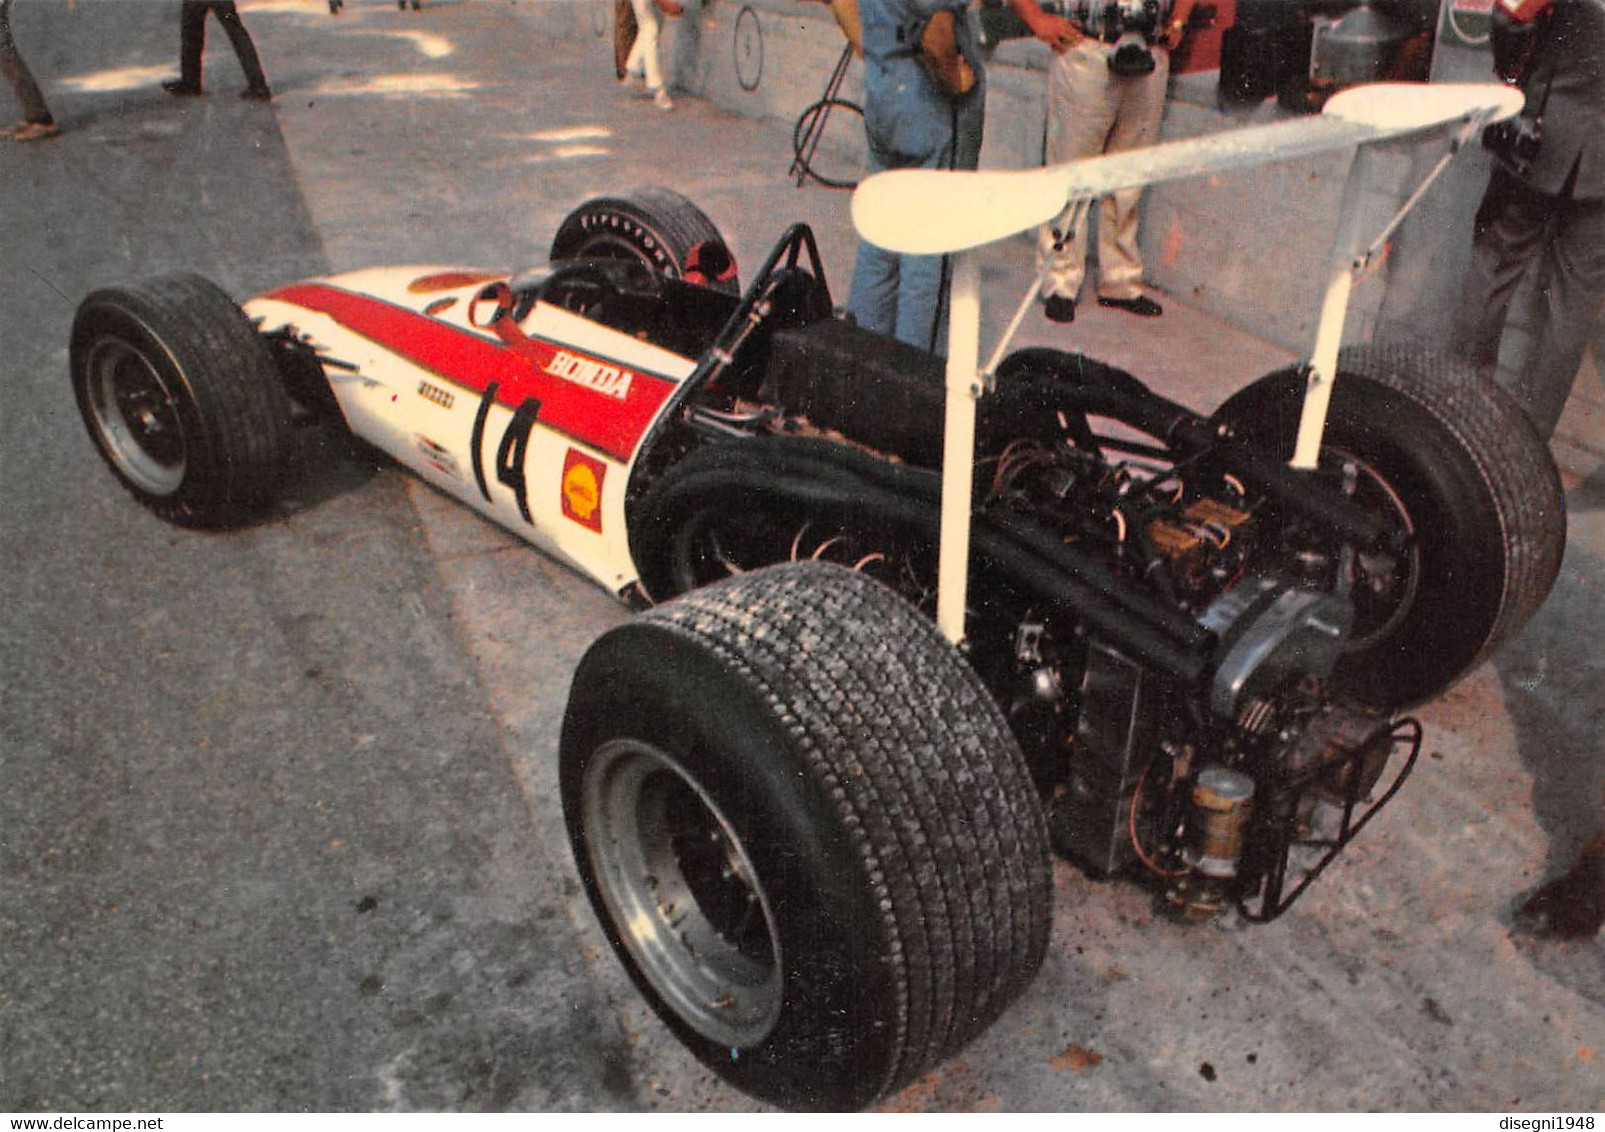 011005 " JOHN SURTEES - HONDA F. 1 1968 - GRAN PREMIO D'ITALIA 1968 - MONZA" CARTOLINA  ORIG. NON SPED. - Automobile - F1